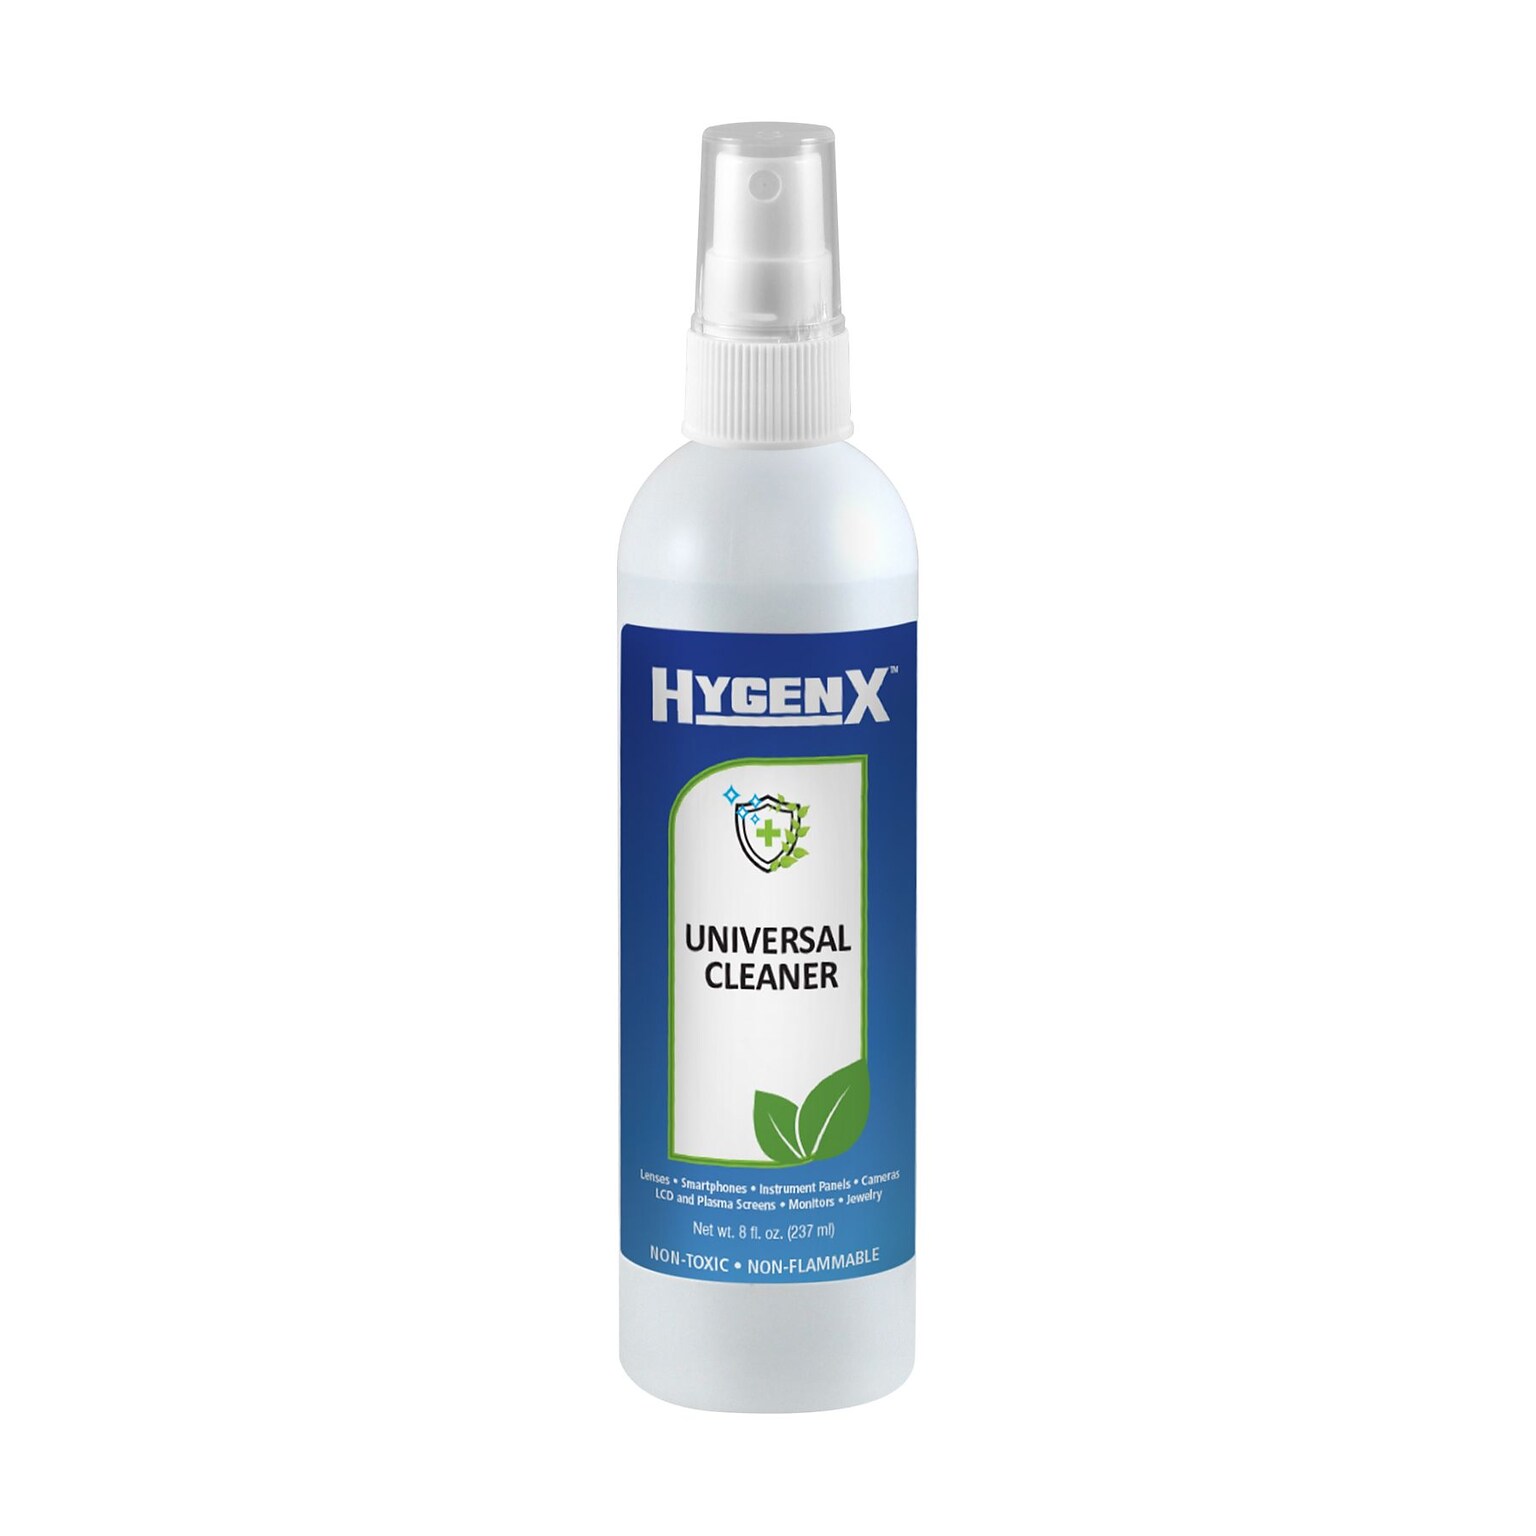 HygenX Universal Cleaner - Spray Bottle (8 Oz.)